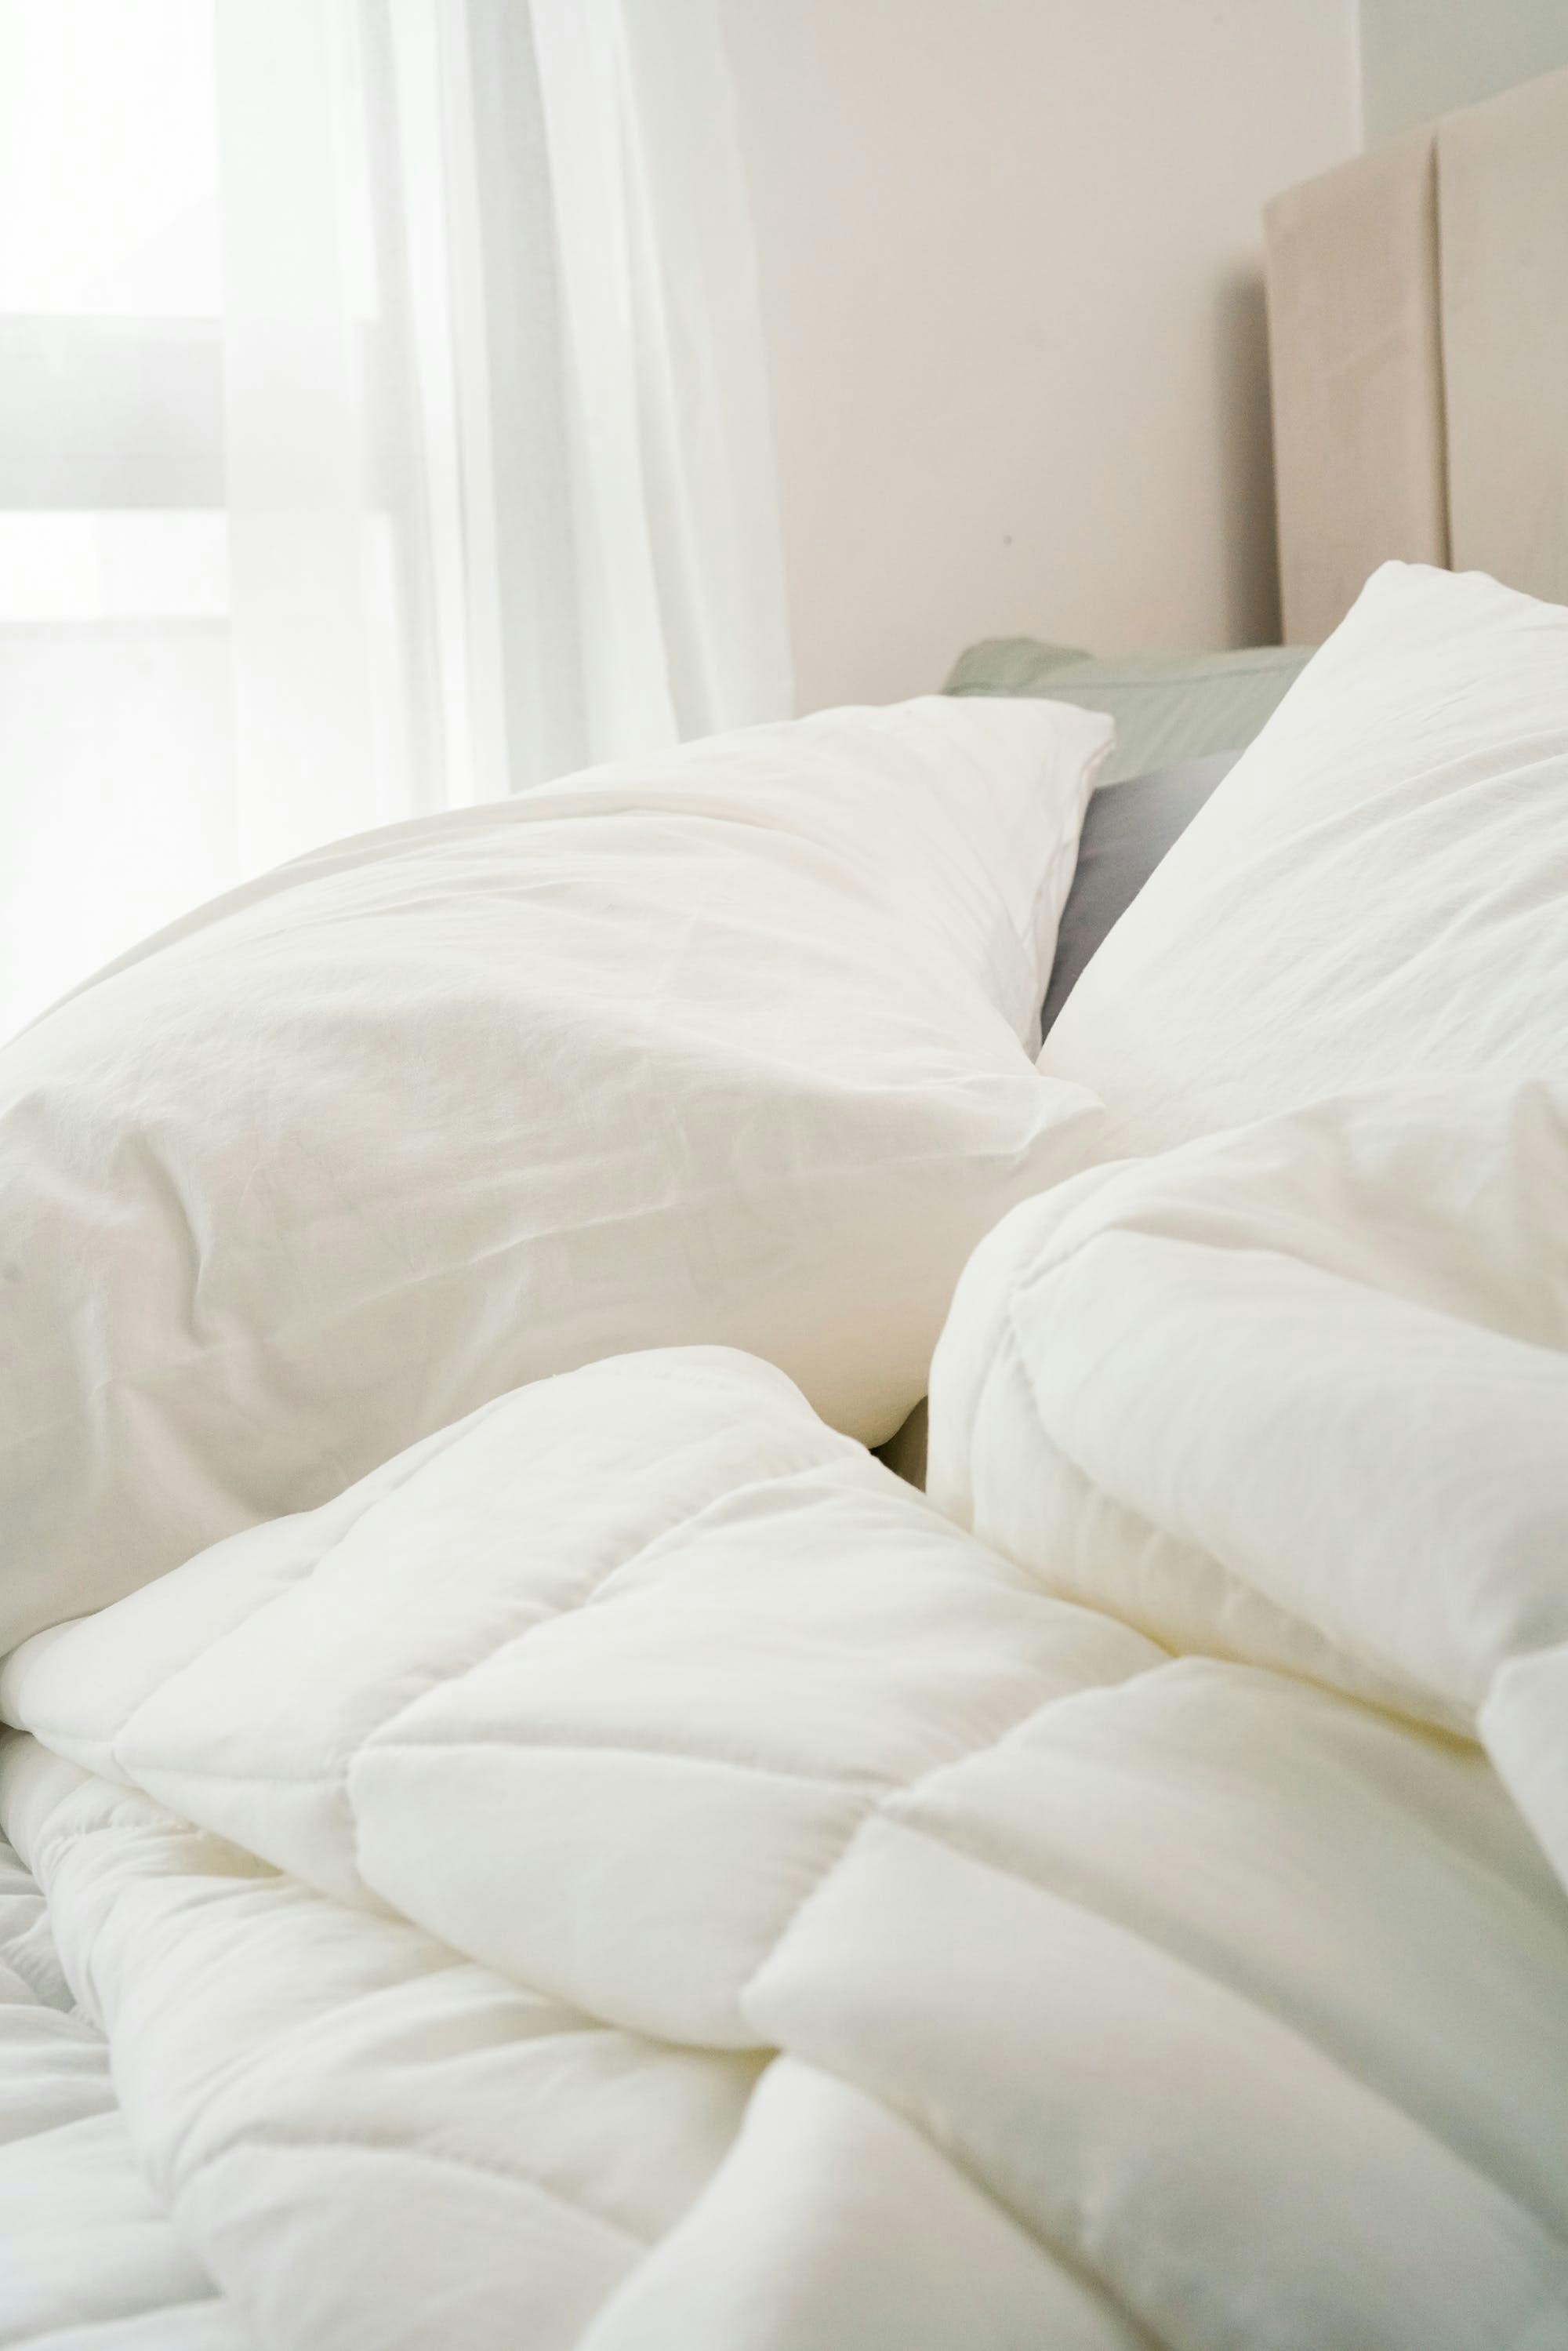 furniture bed pillow cushion mattress linen home decor